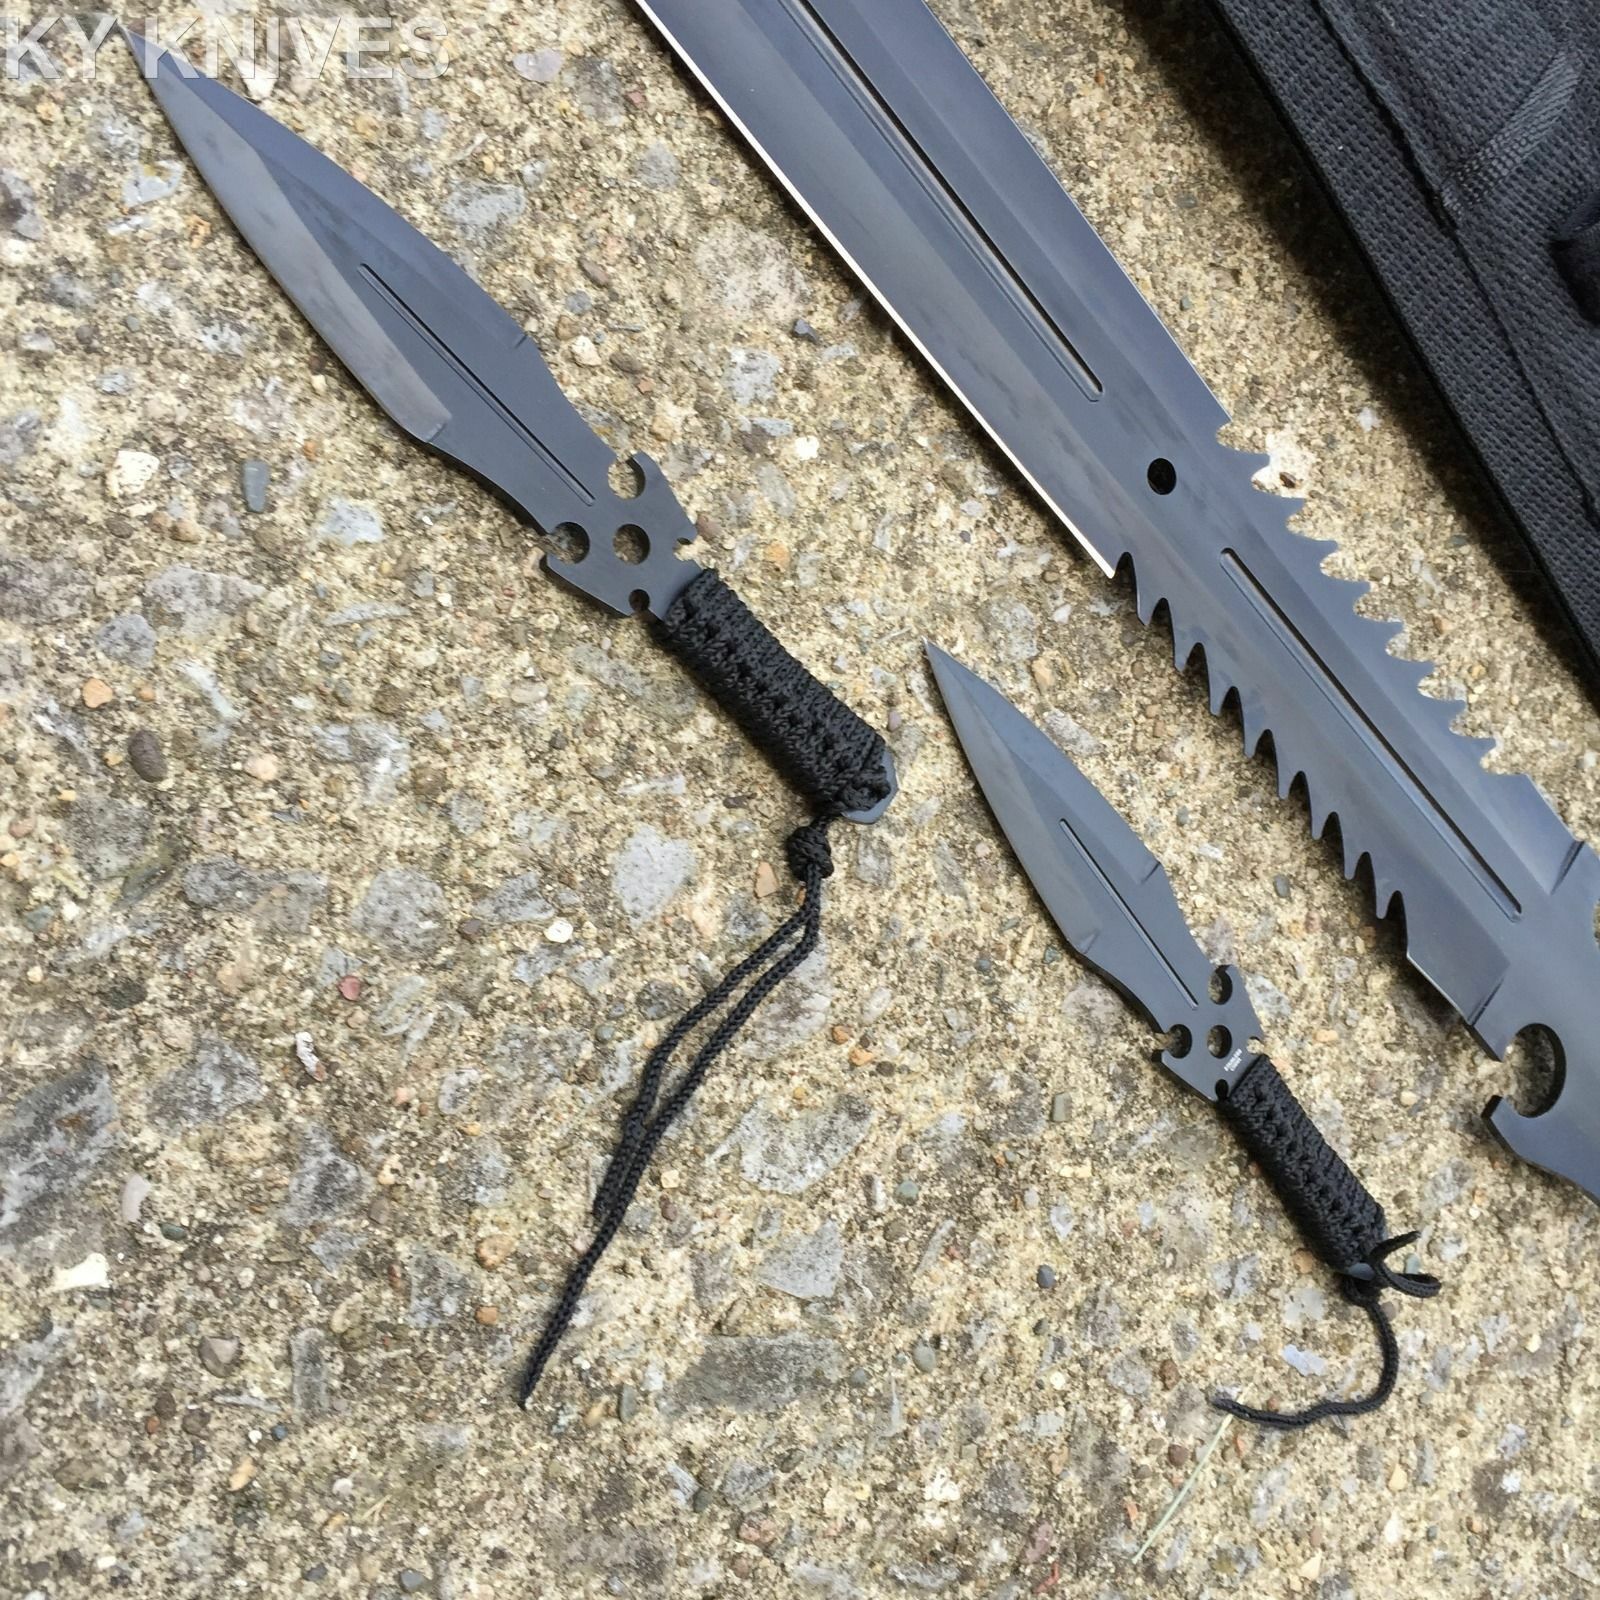 Dark Assassin Knuckle Knife - Thin Combat Chakra Blades - Ninja